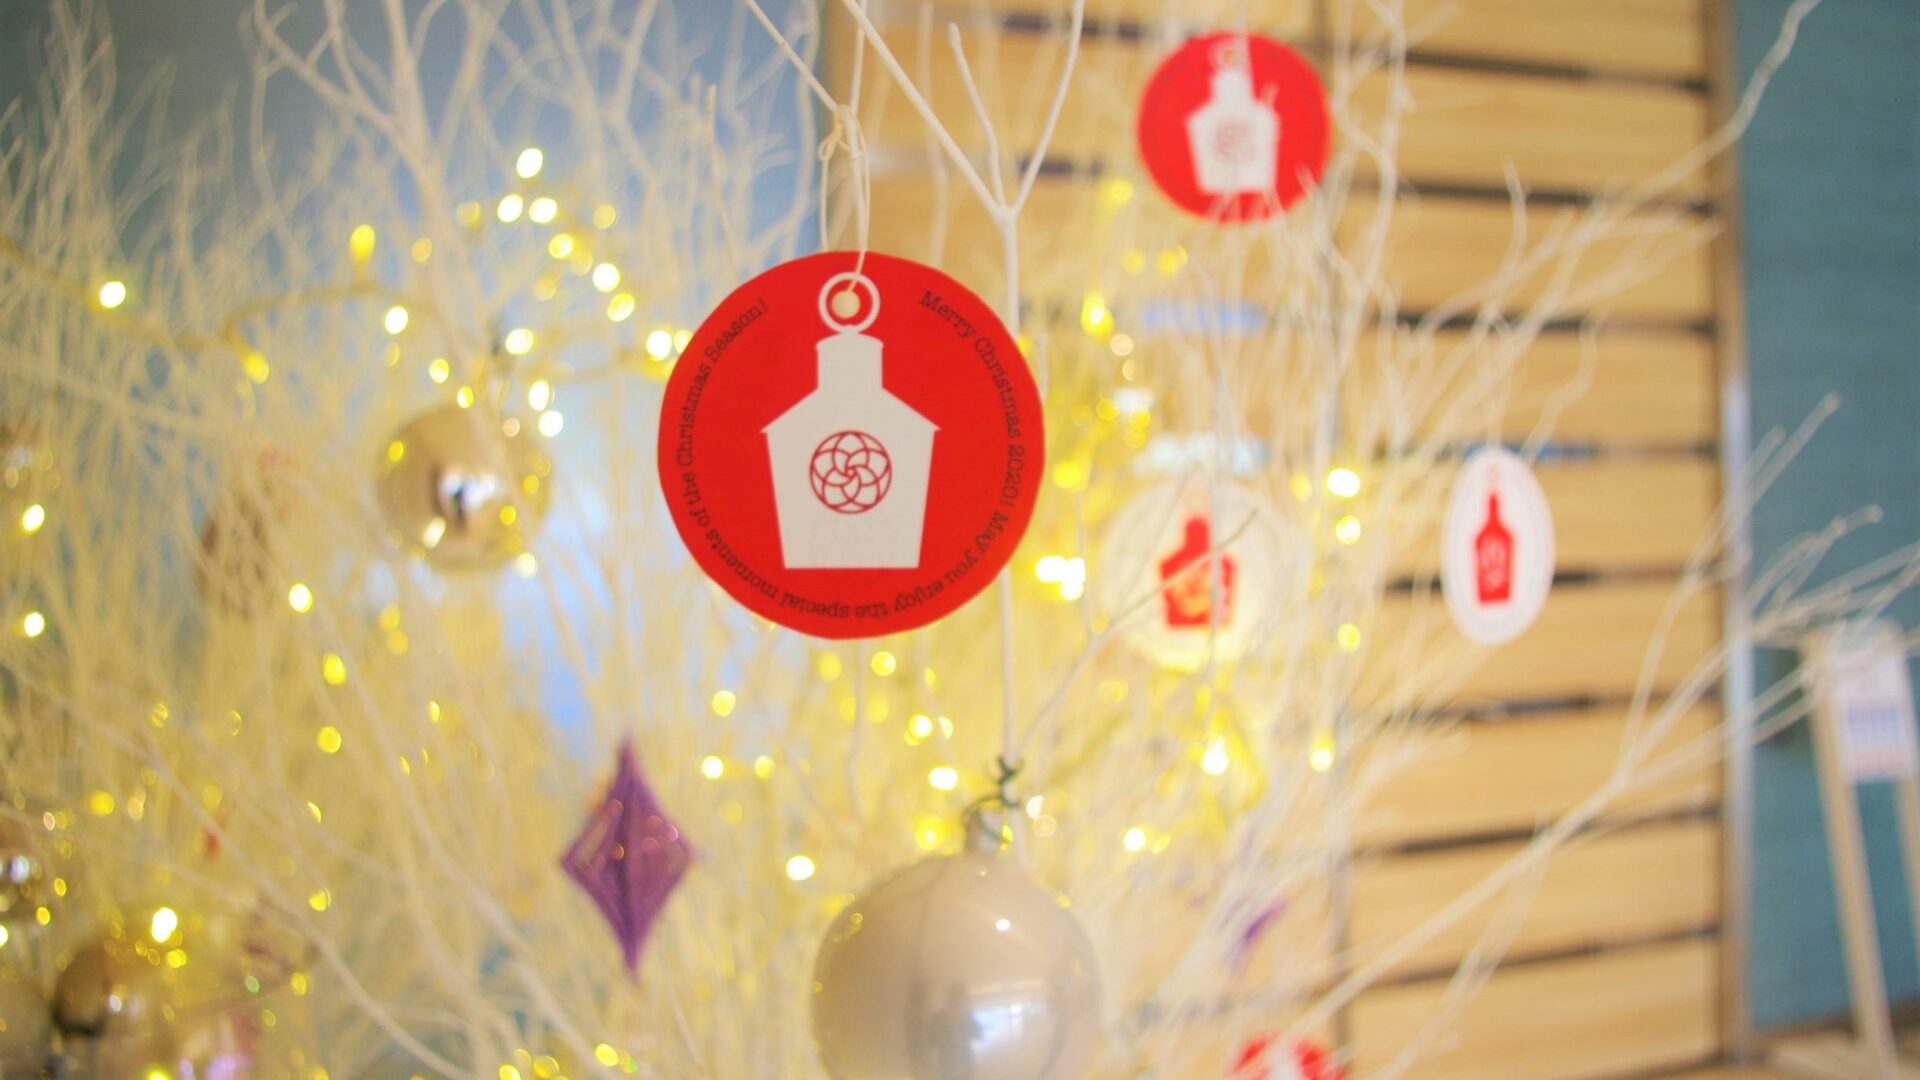 クリスマス装飾 始まりました Staff Blog 観光 イベント情報 箱根 芦ノ湖のホテル 旅館なら 箱根 芦ノ湖 はなをり 公式